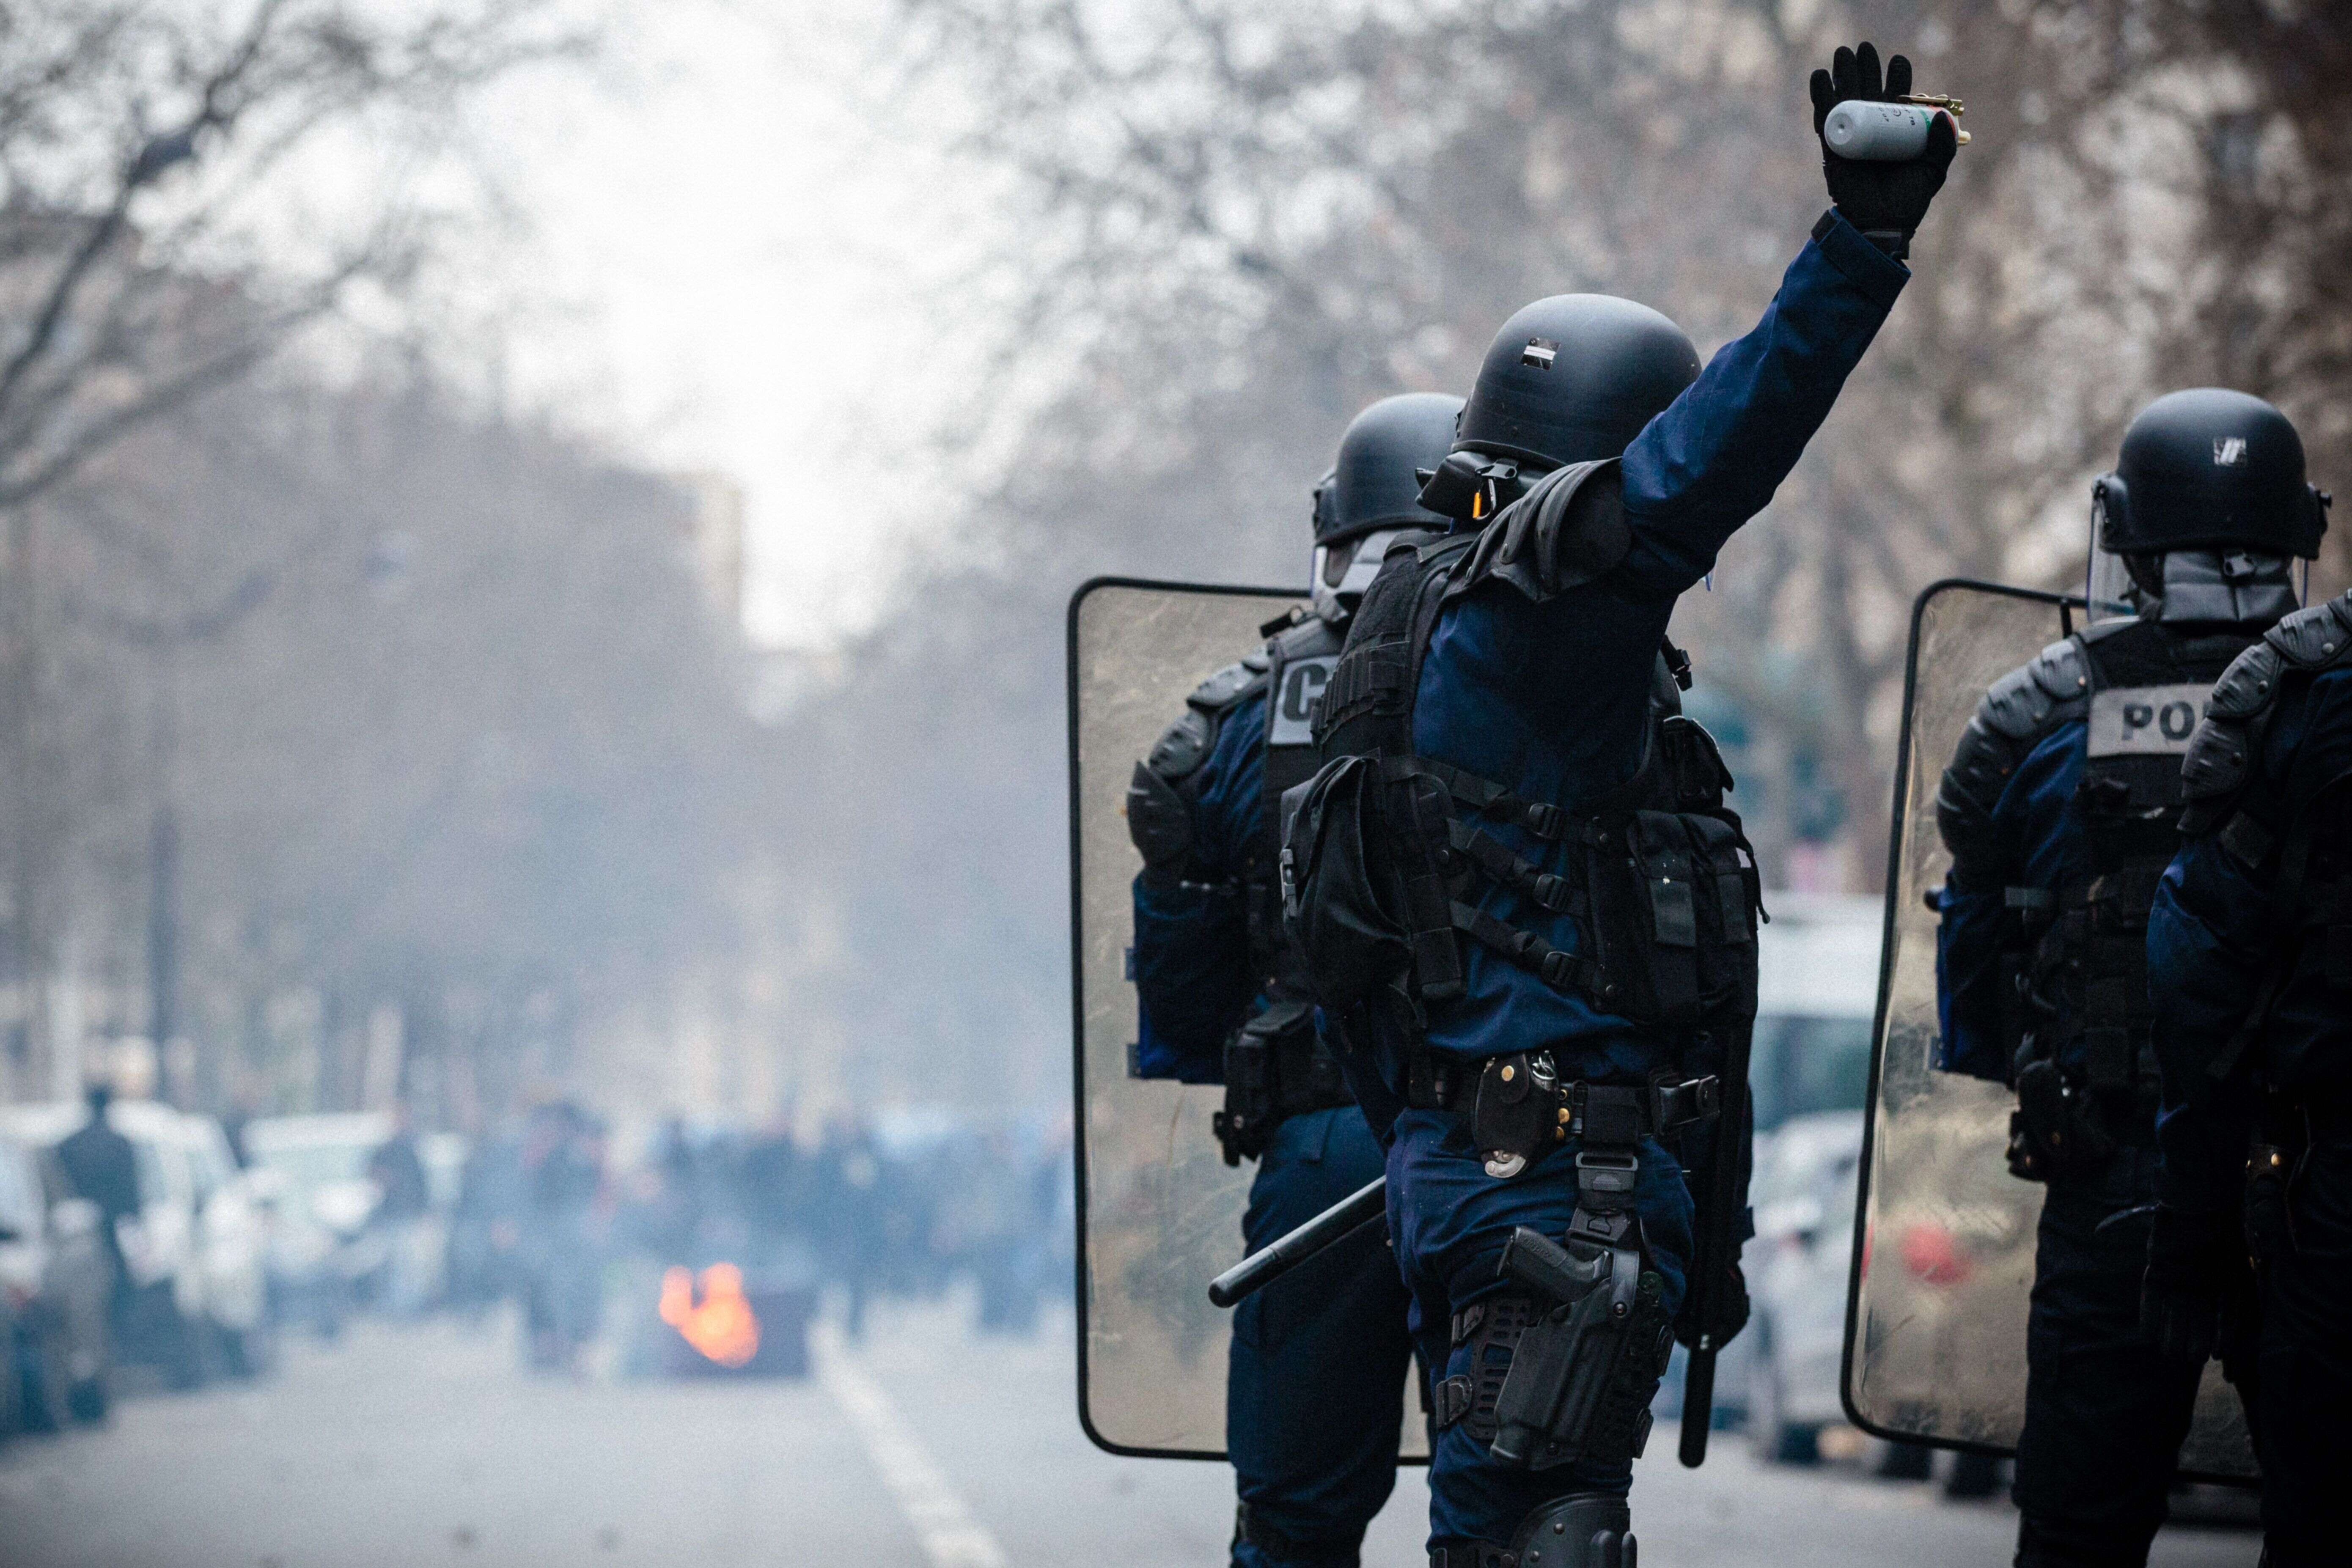 Des heurts entre police et manifestants ont lieu lors d'un rassemblement en soutien à Théo Luhaka, gravement blessé par la police à Aulnay-sous-Bois, le 23 février 2017 à Paris.